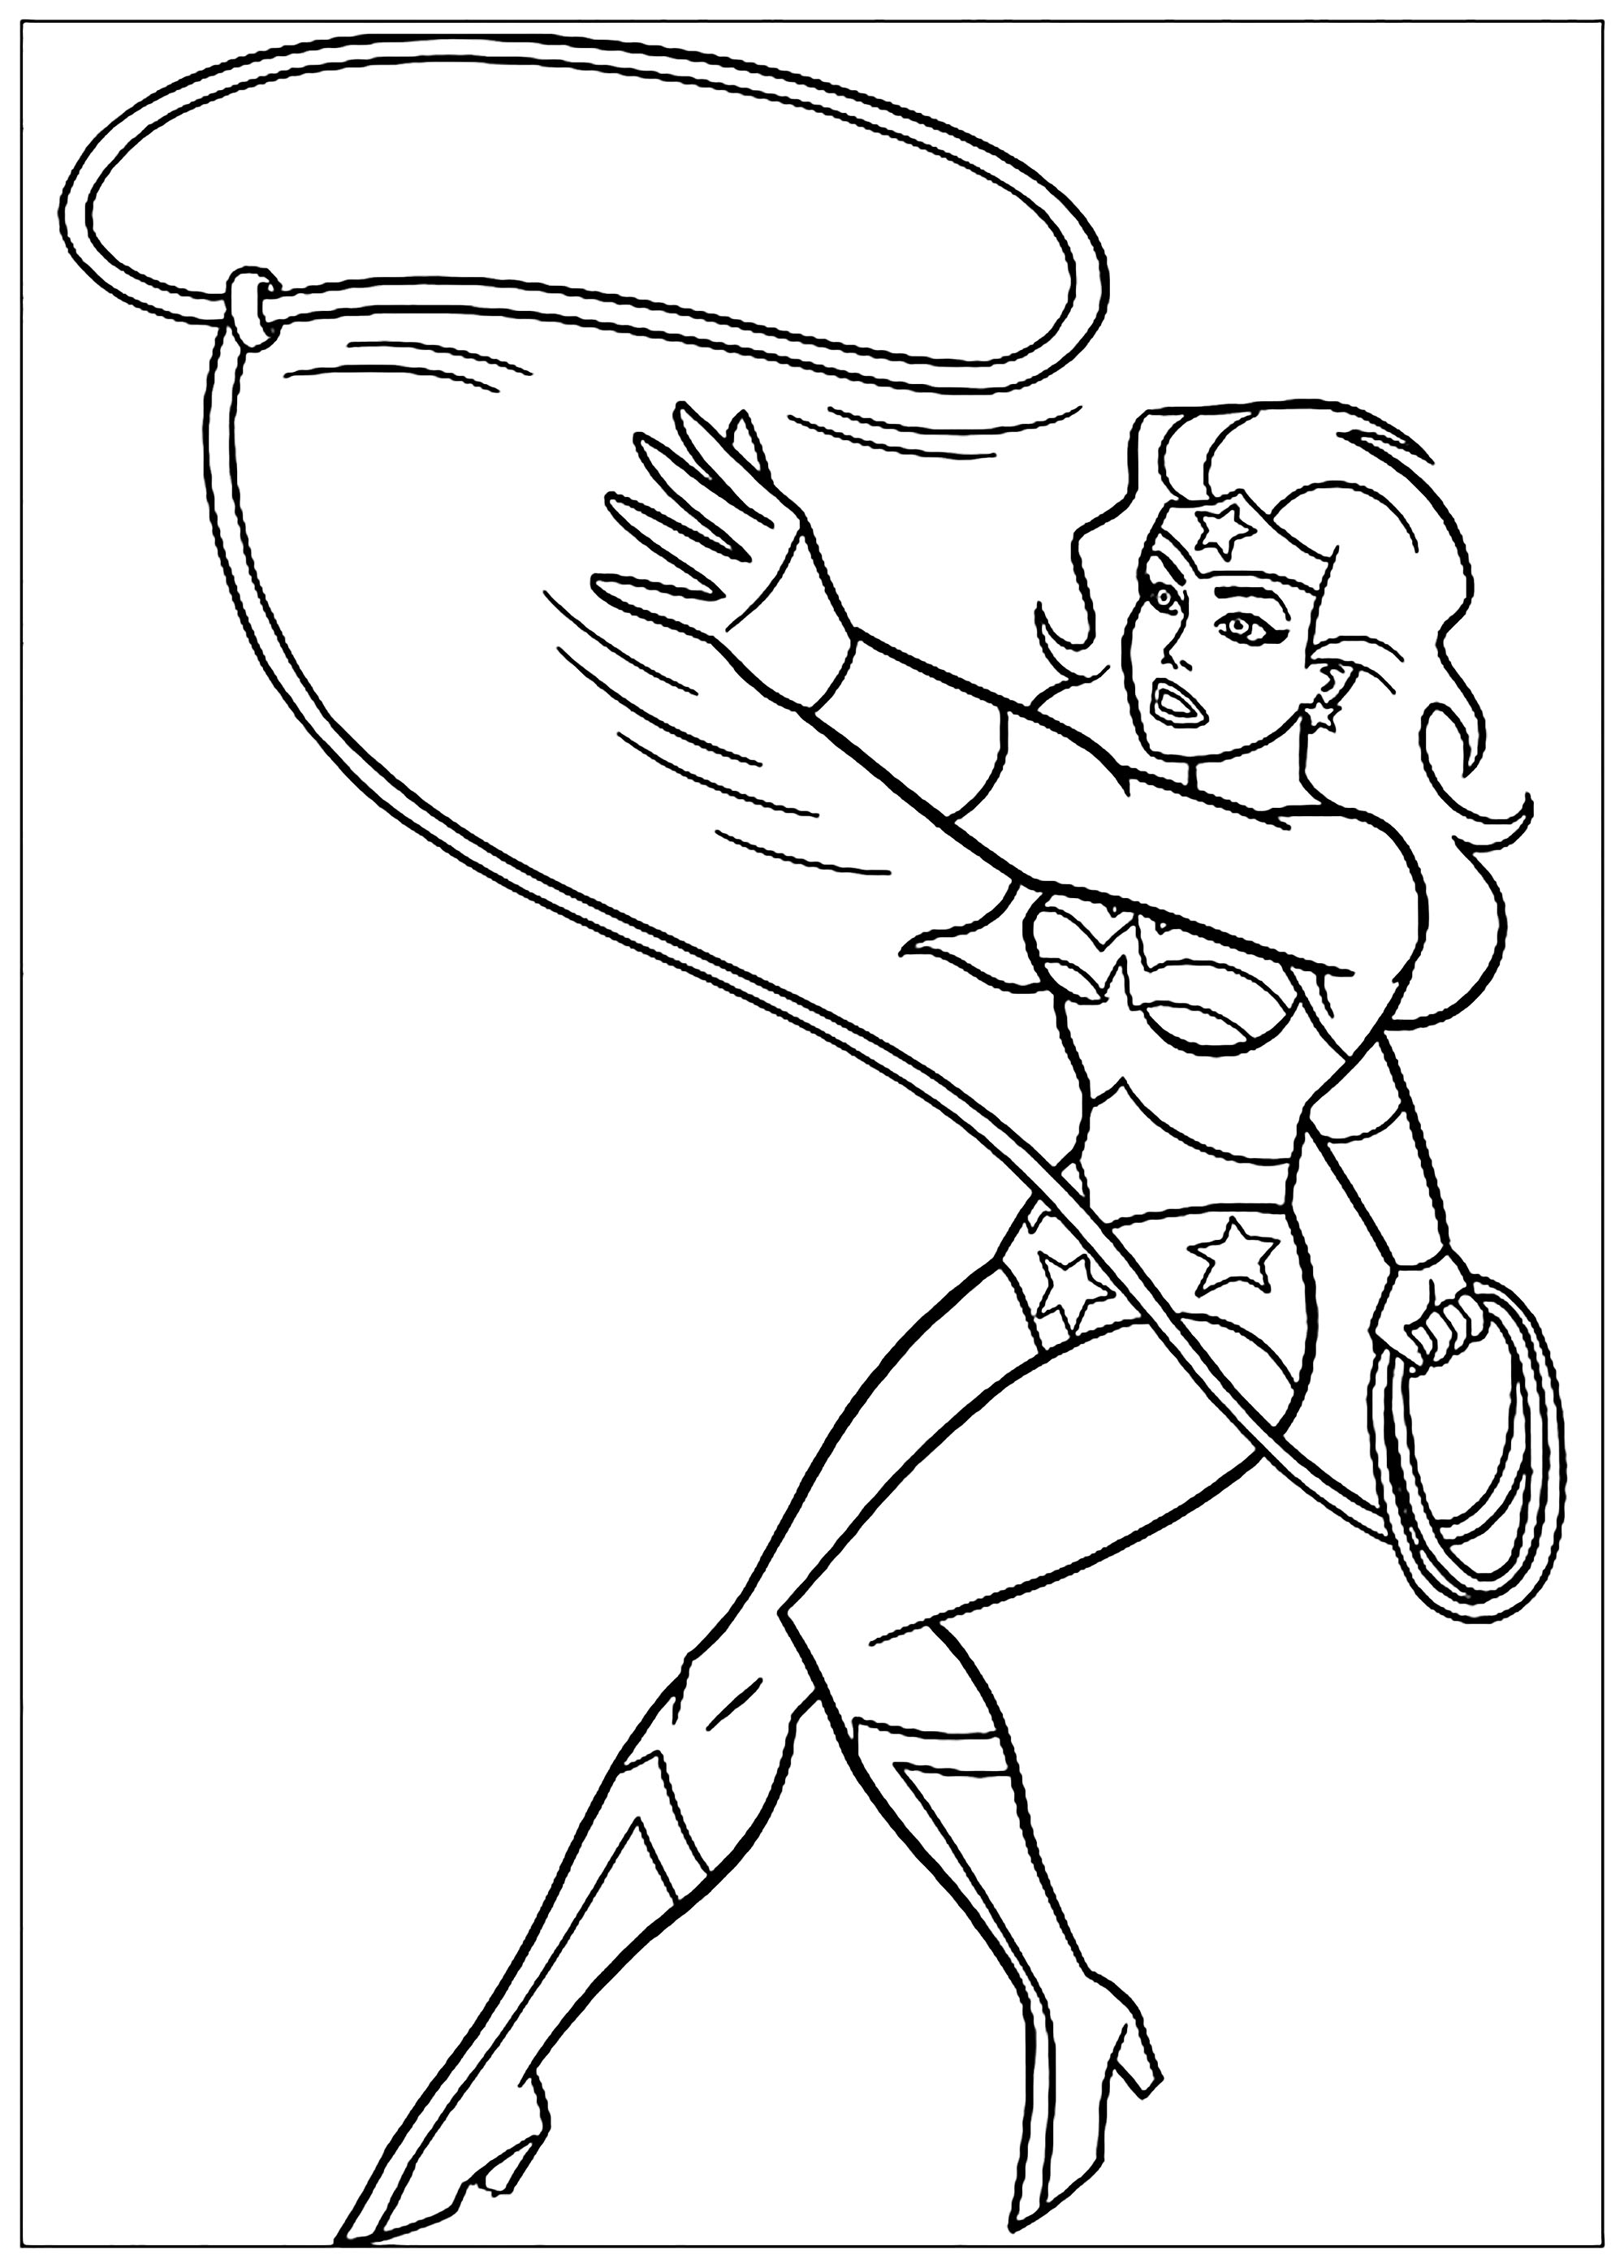 A vous de colorier la super héroïne en pleine action !